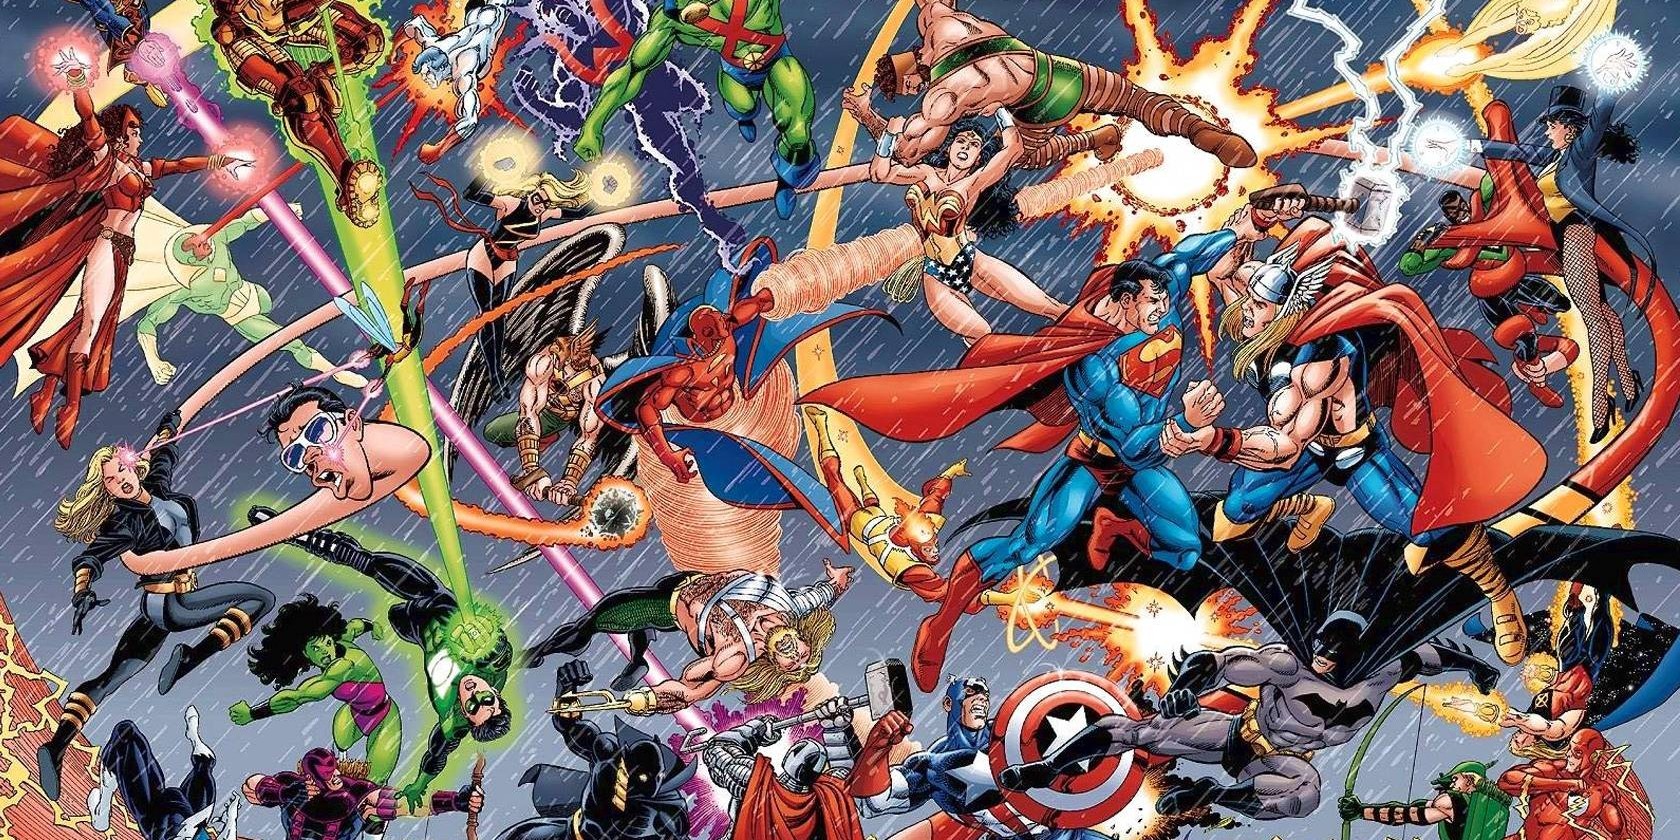 8 Personages die DC Comics van Marvel heeft gekopieerd